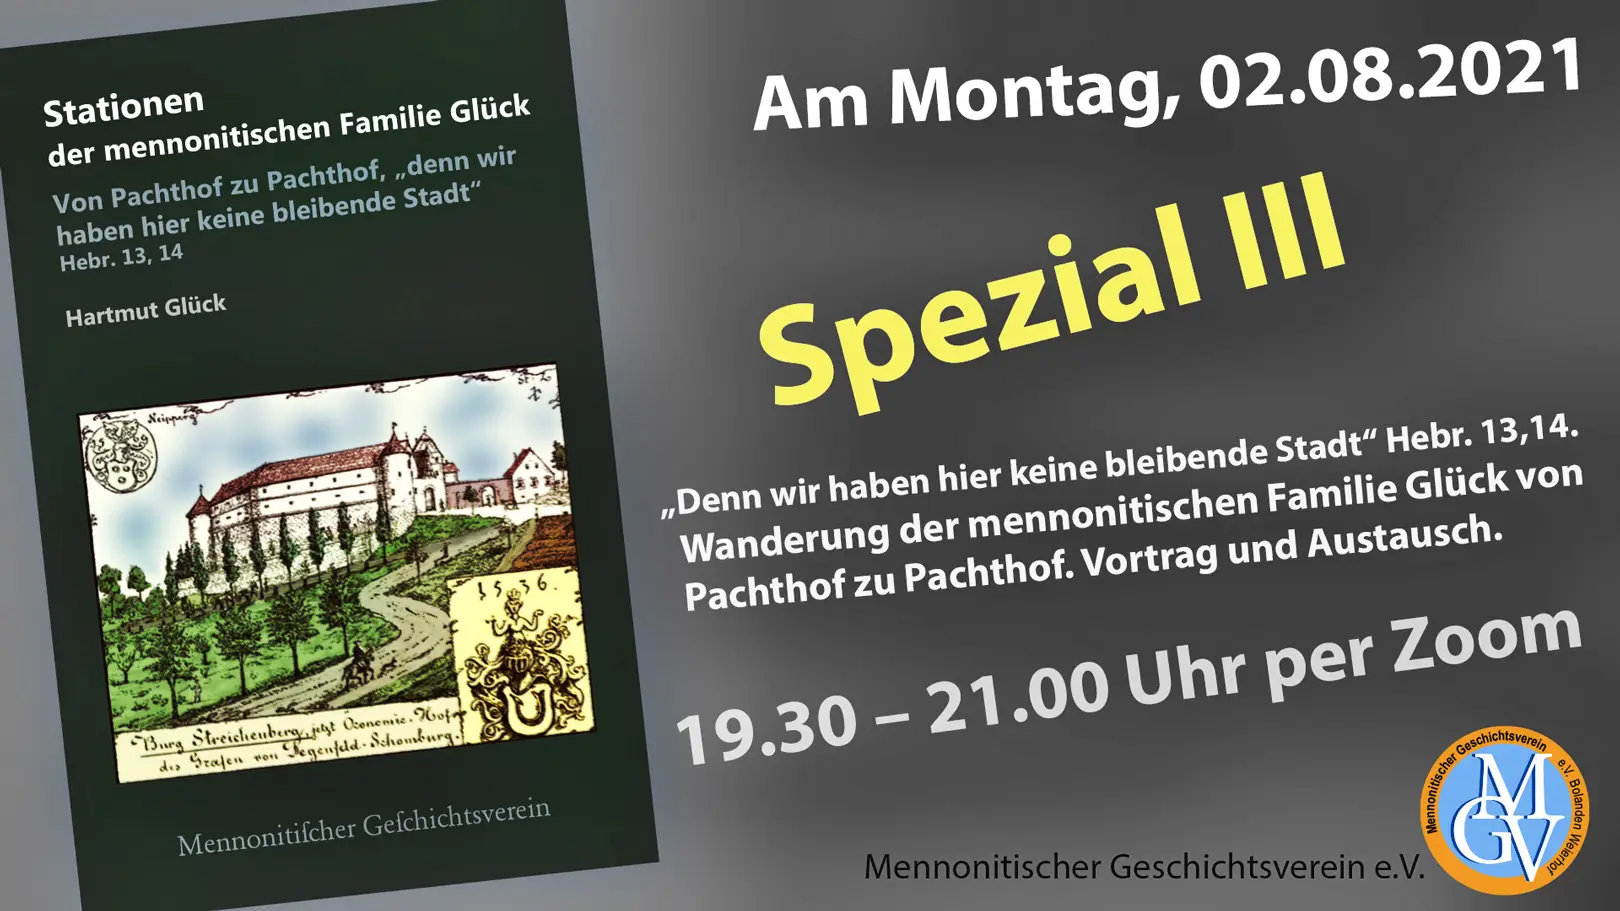 Mennonitischer Geschichtsverein, Forschungsstelle. Wanderung der mennonirischen Familie Glück von Pachthof zu Pachthof.